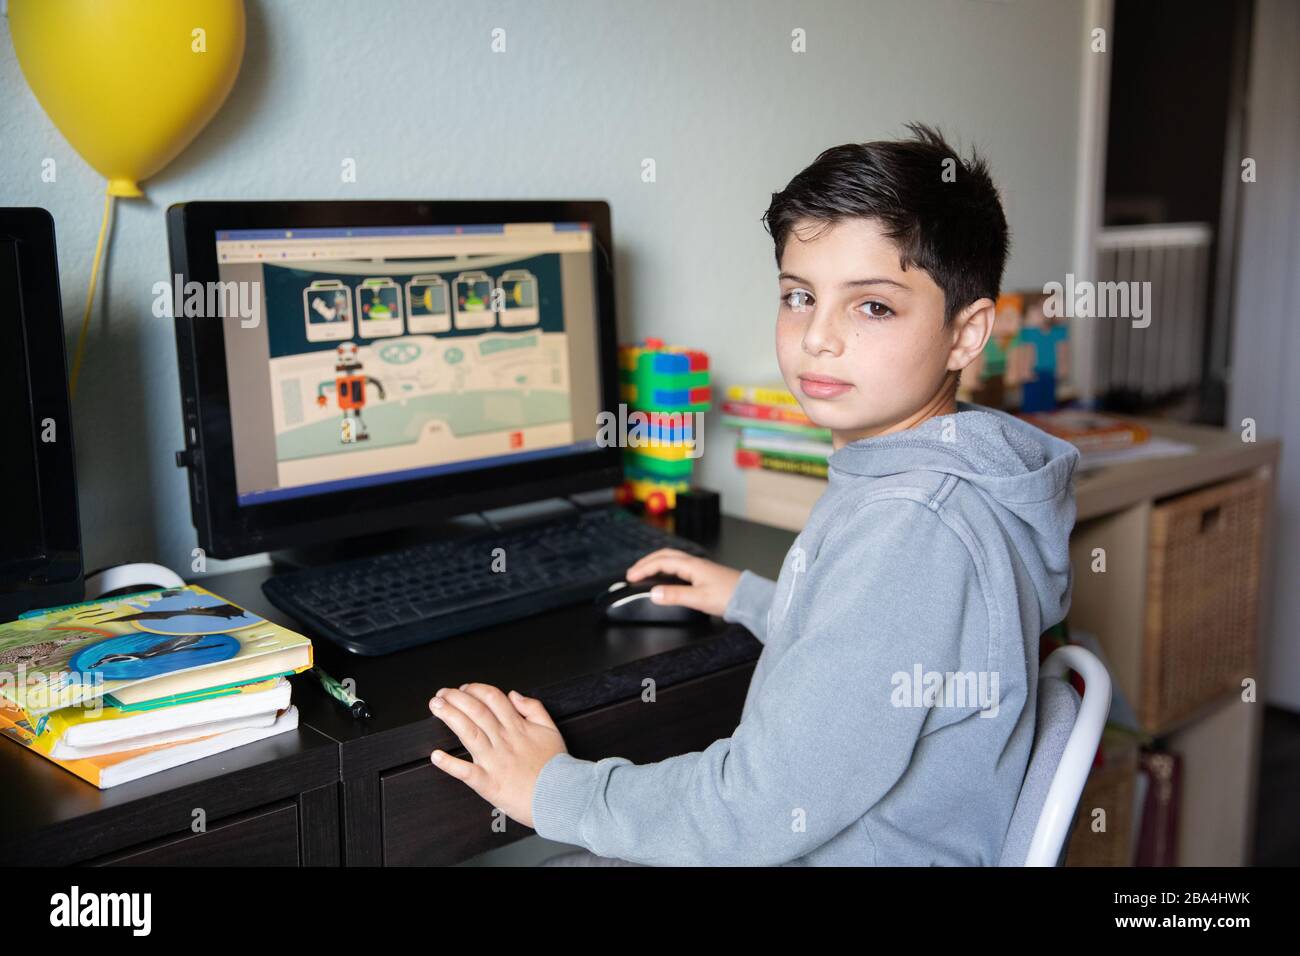 Niedlicher kleiner Junge, der zu Hause auf dem Computer aufgrund von Schulschließungen wegen des Ausbruchs des Corona-Virus in der Welt studiert. Stockfoto